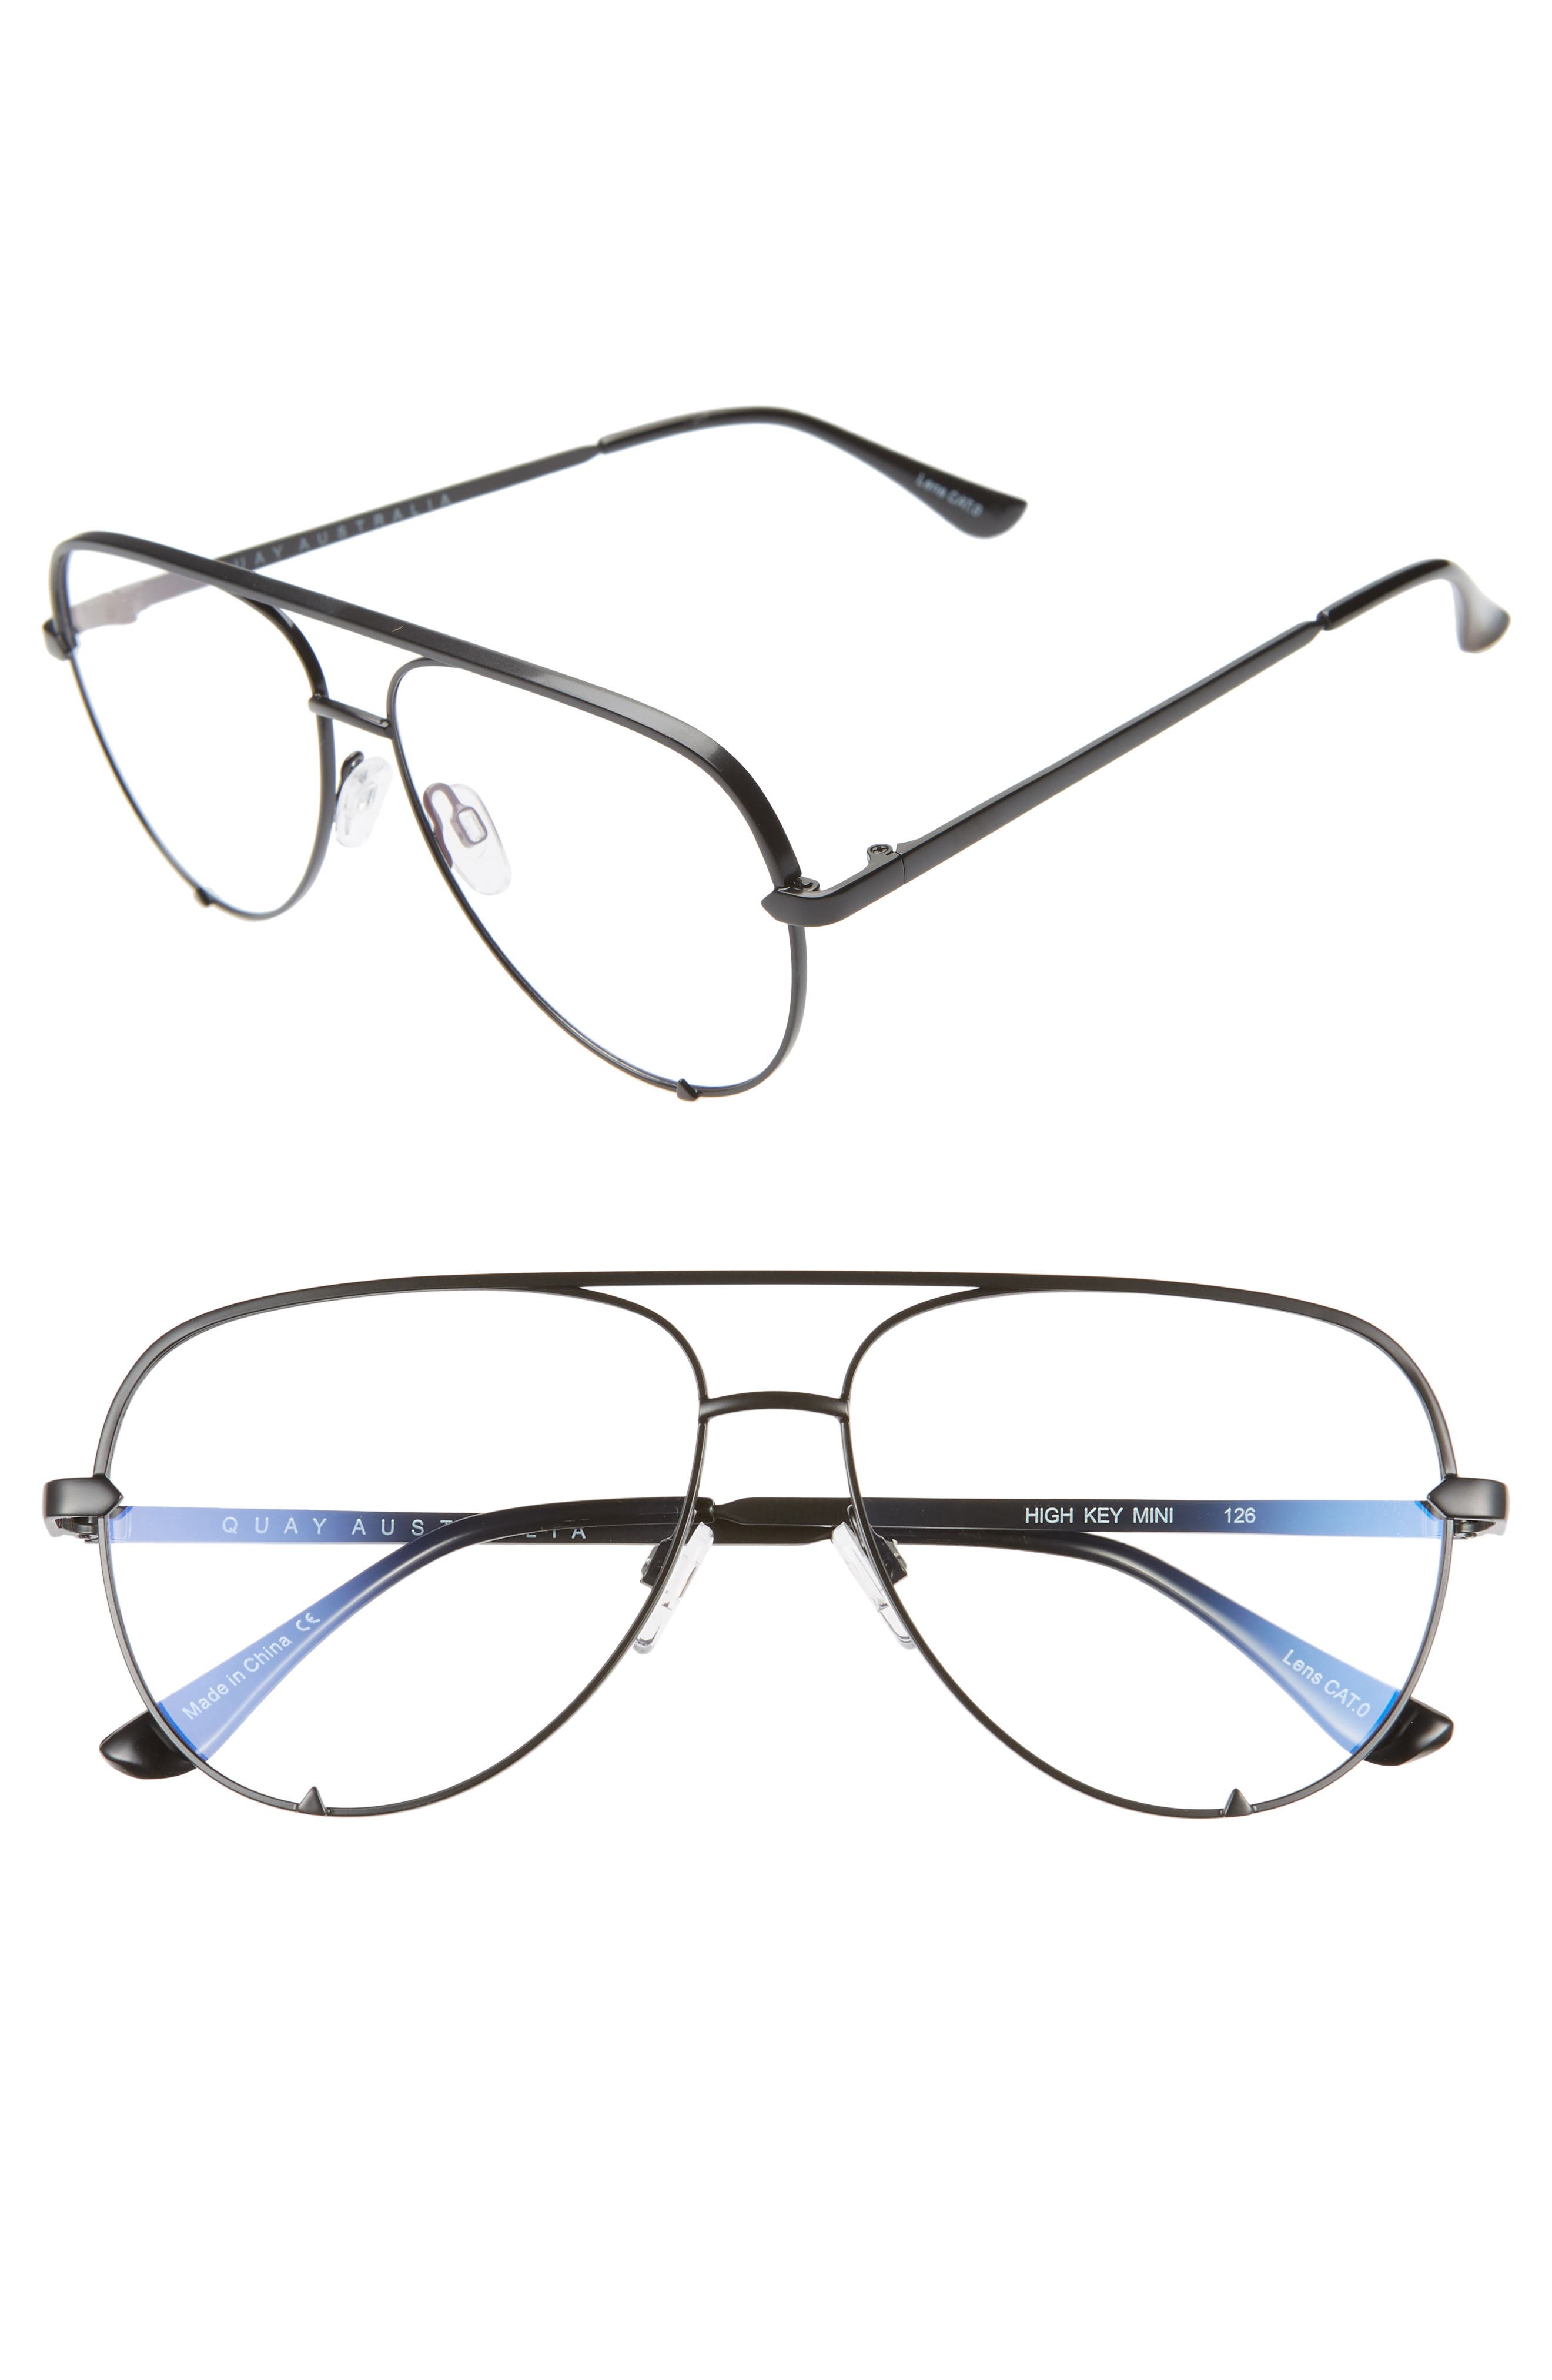 burberry blue light glasses